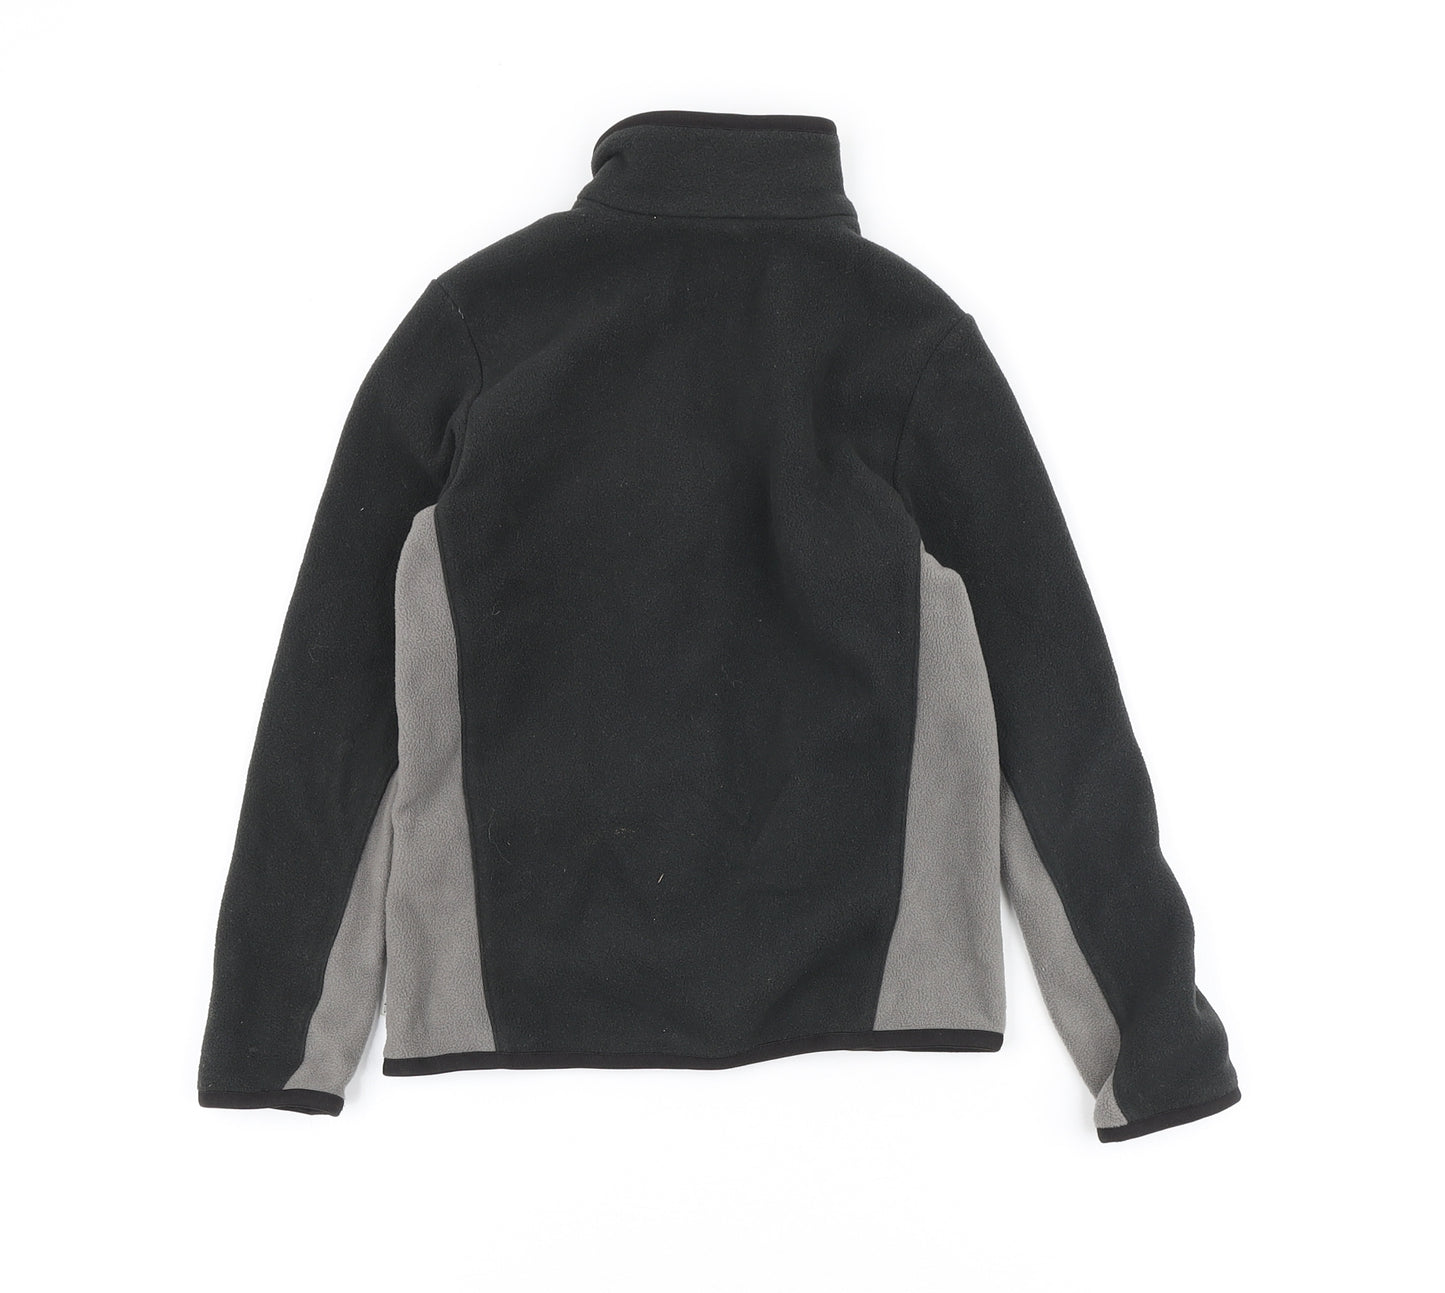 OXYLANE Boys Black Polyester Full Zip Sweatshirt Size 6 Years Zip